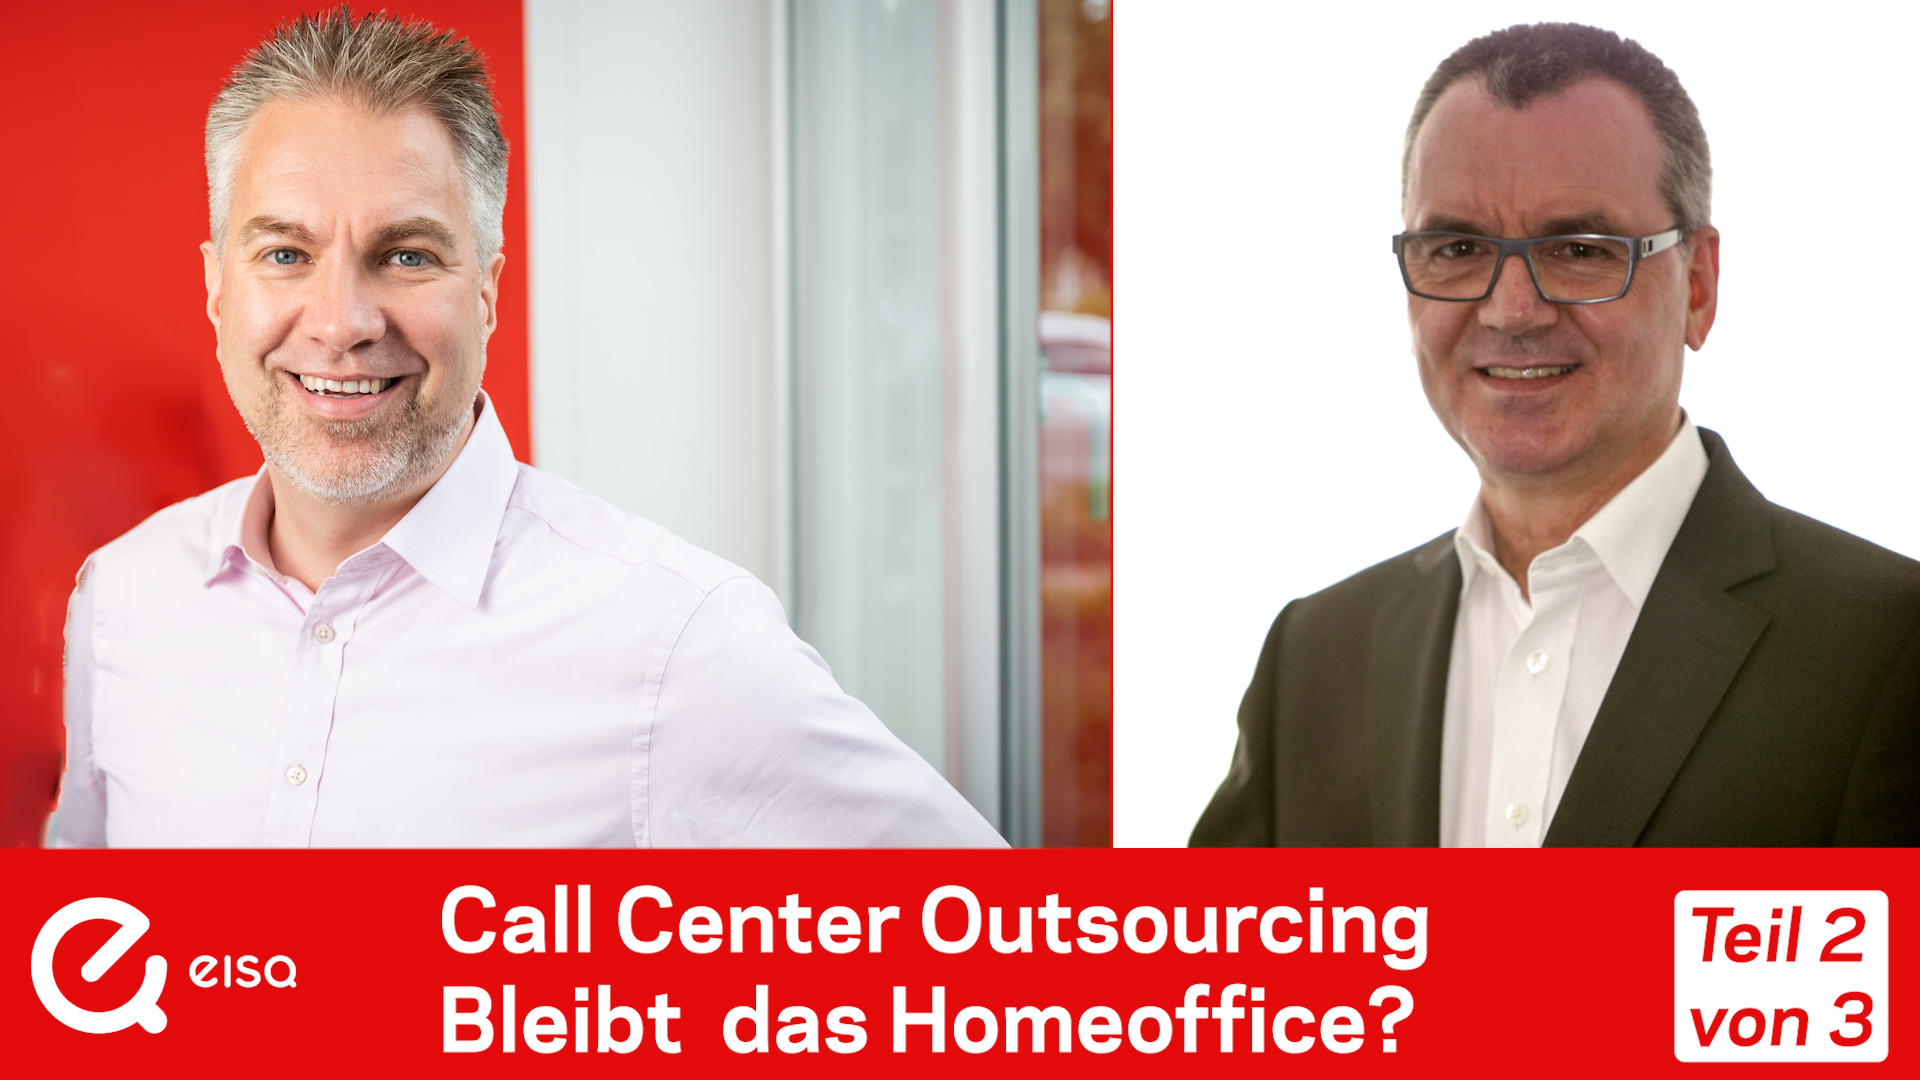 Bernhard Gandolf und Rüdiger Wolf fachsimpeln über das Home Office im Call Center Outsourcing